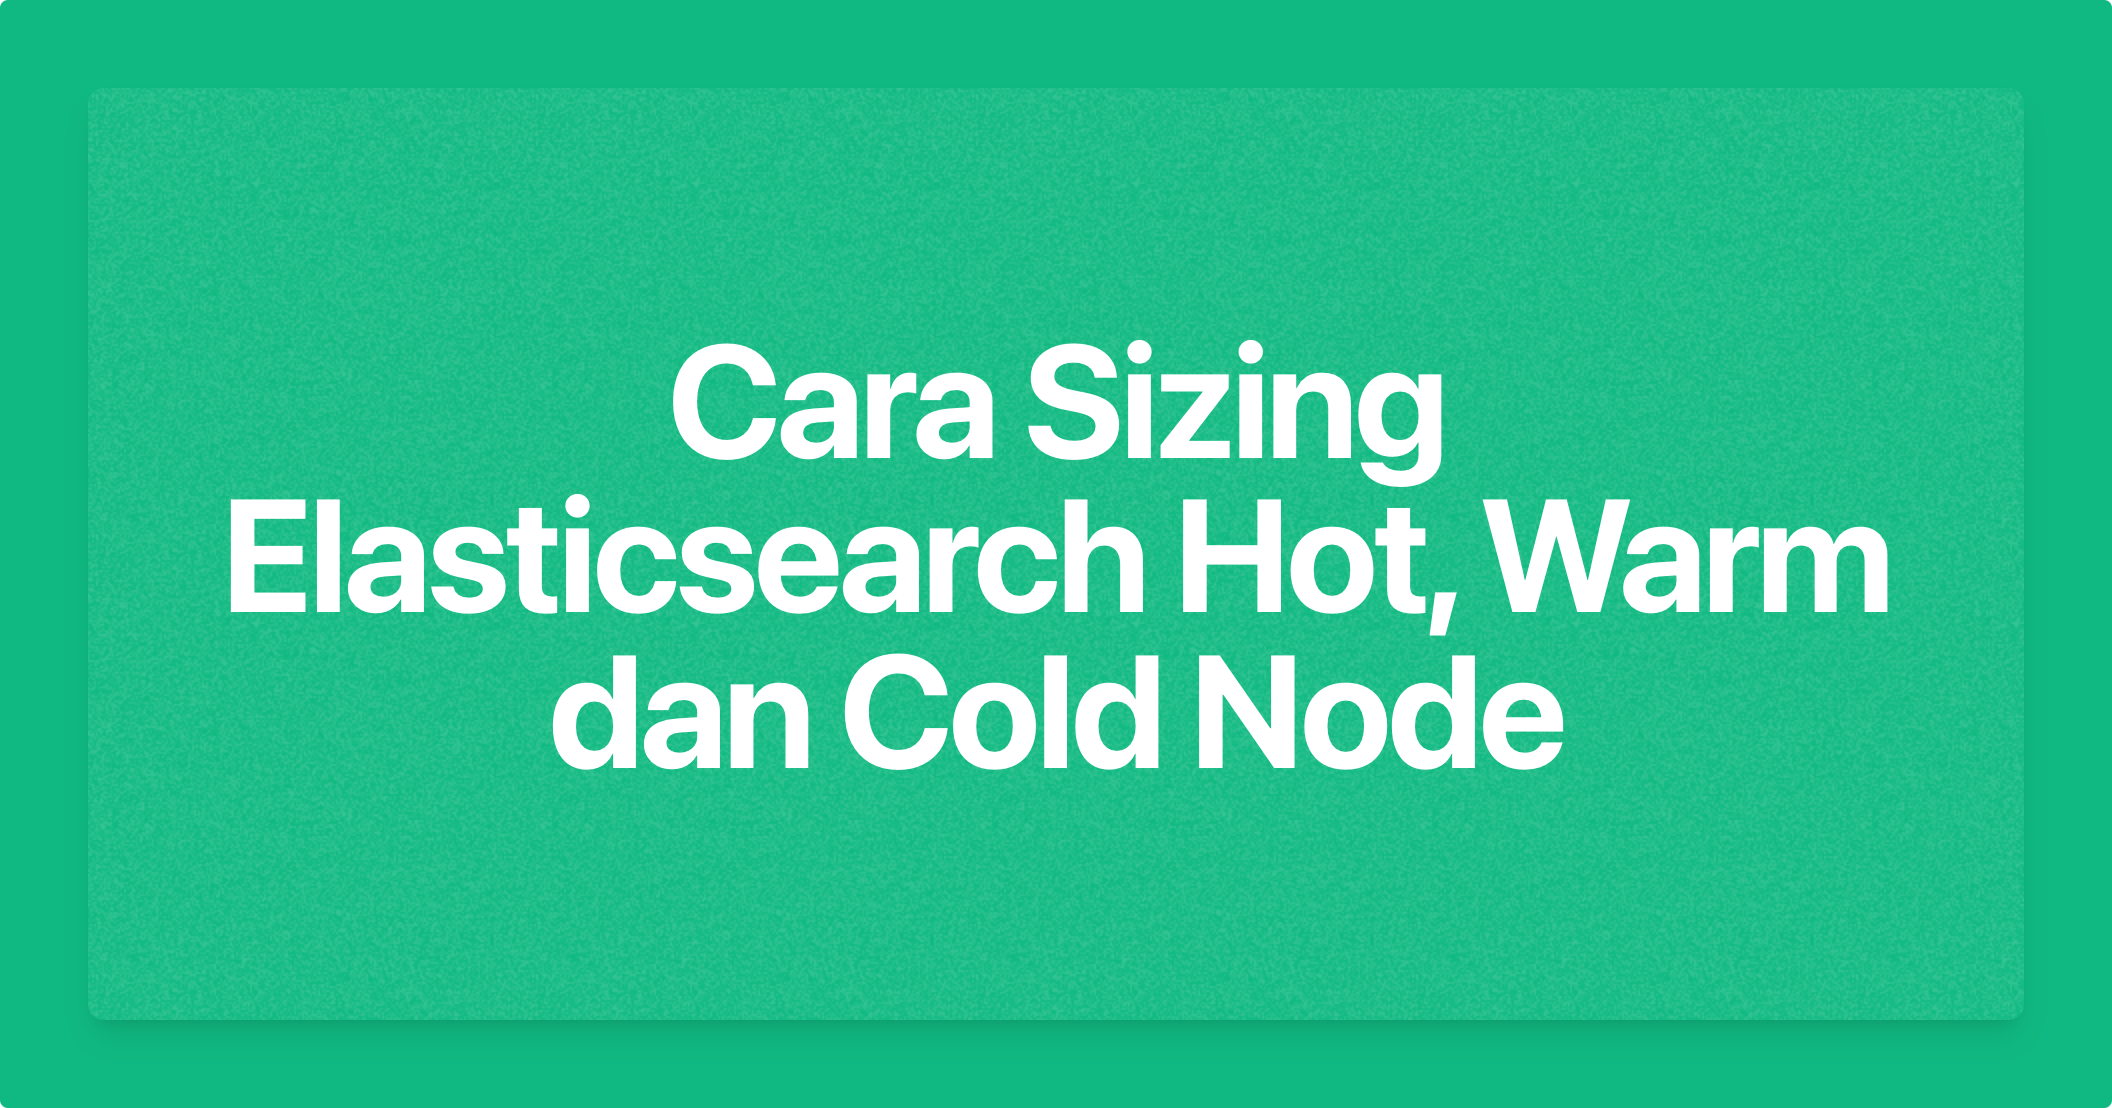 Cara Sizing Elasticsearch Hot, Warm dan Cold Node
